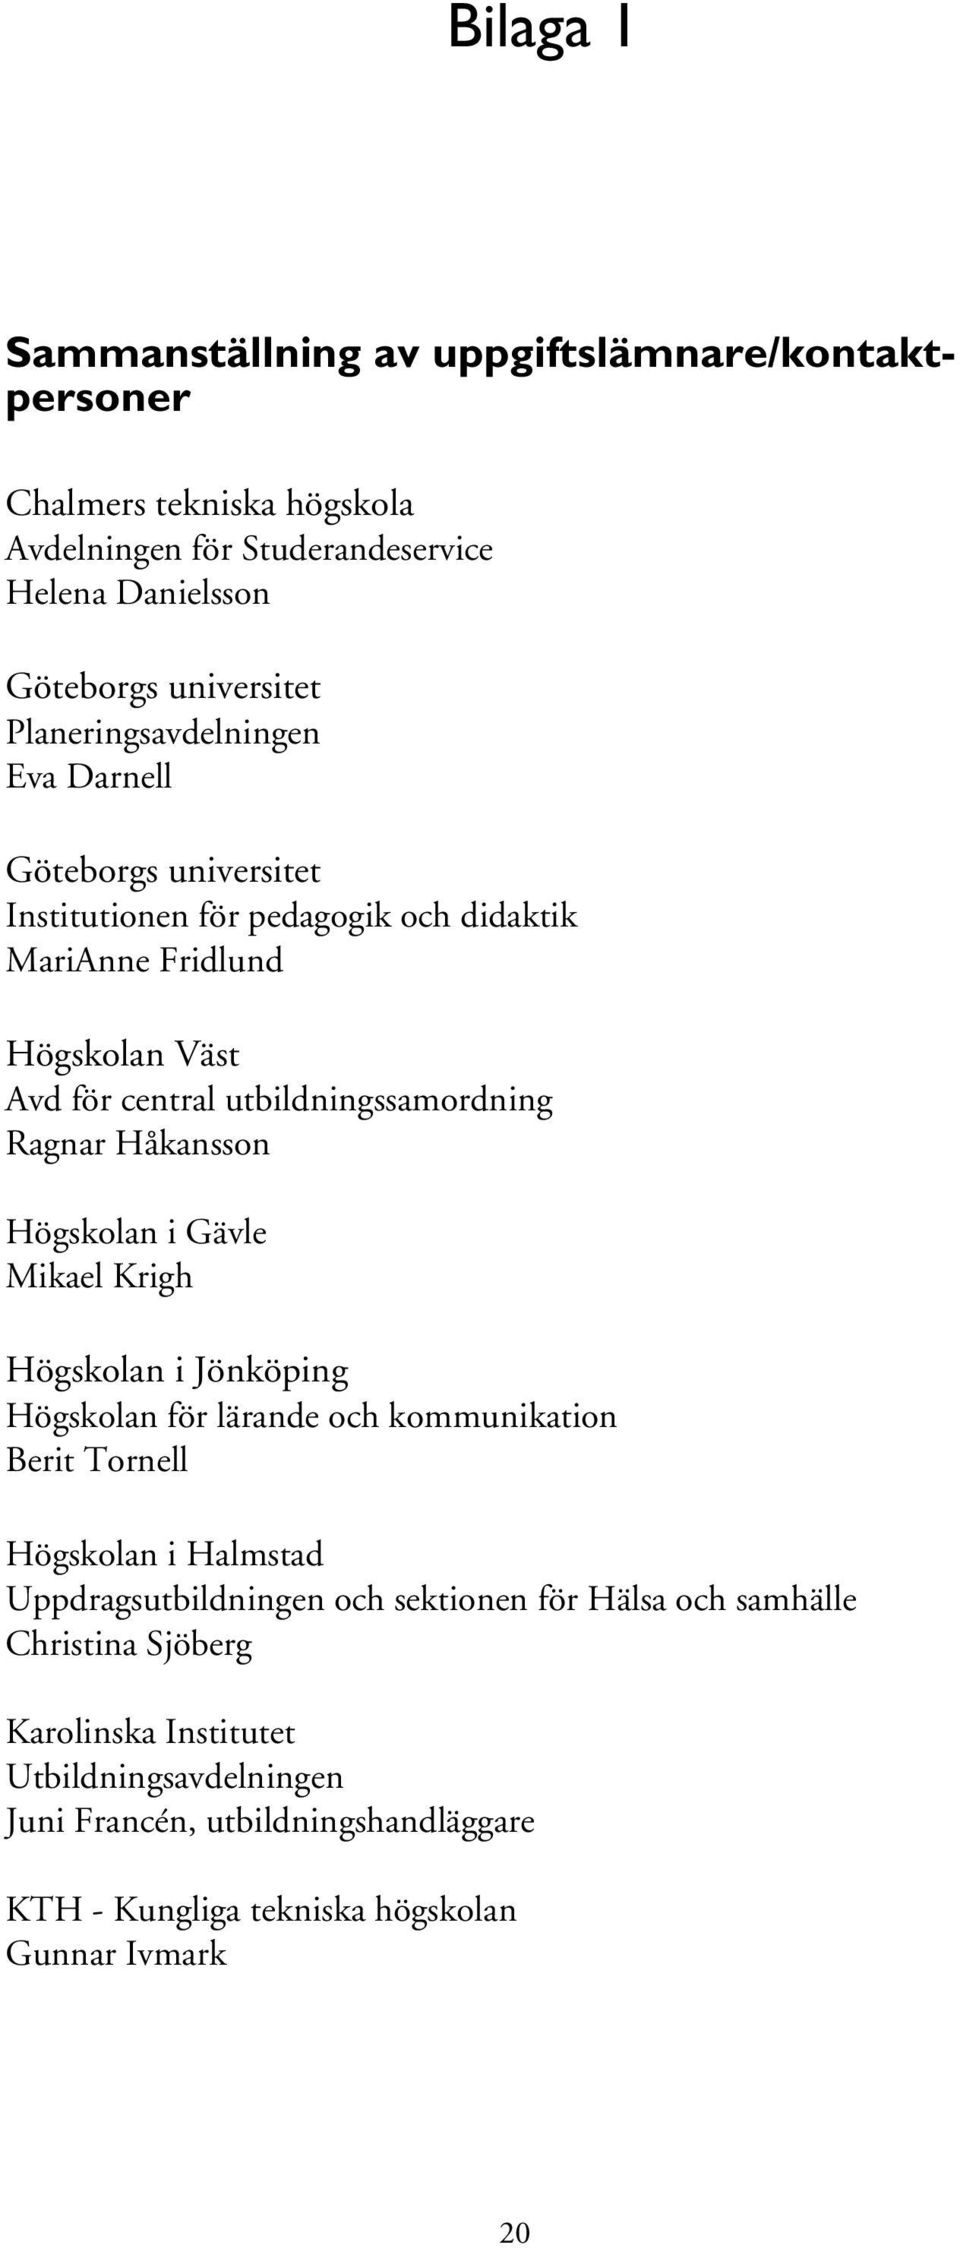 Ragnar Håkansson Högskolan i Gävle Mikael Krigh Högskolan i Jönköping Högskolan för lärande och kommunikation Berit Tornell Högskolan i Halmstad Uppdragsutbildningen och